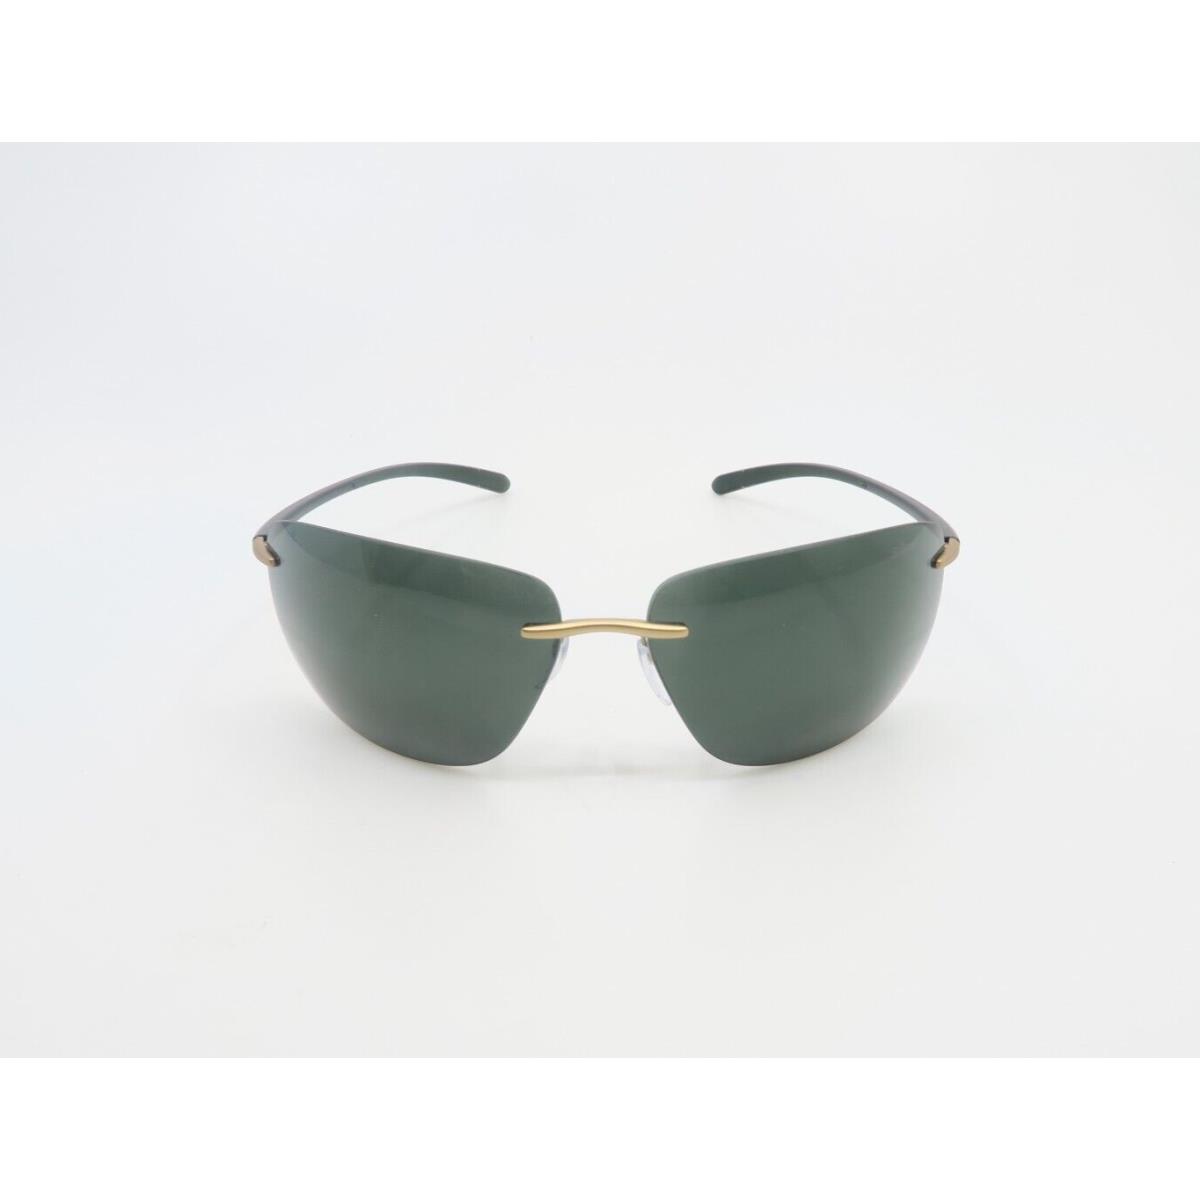 Silhouette sunglasses  - Gold Frame, Green Lens